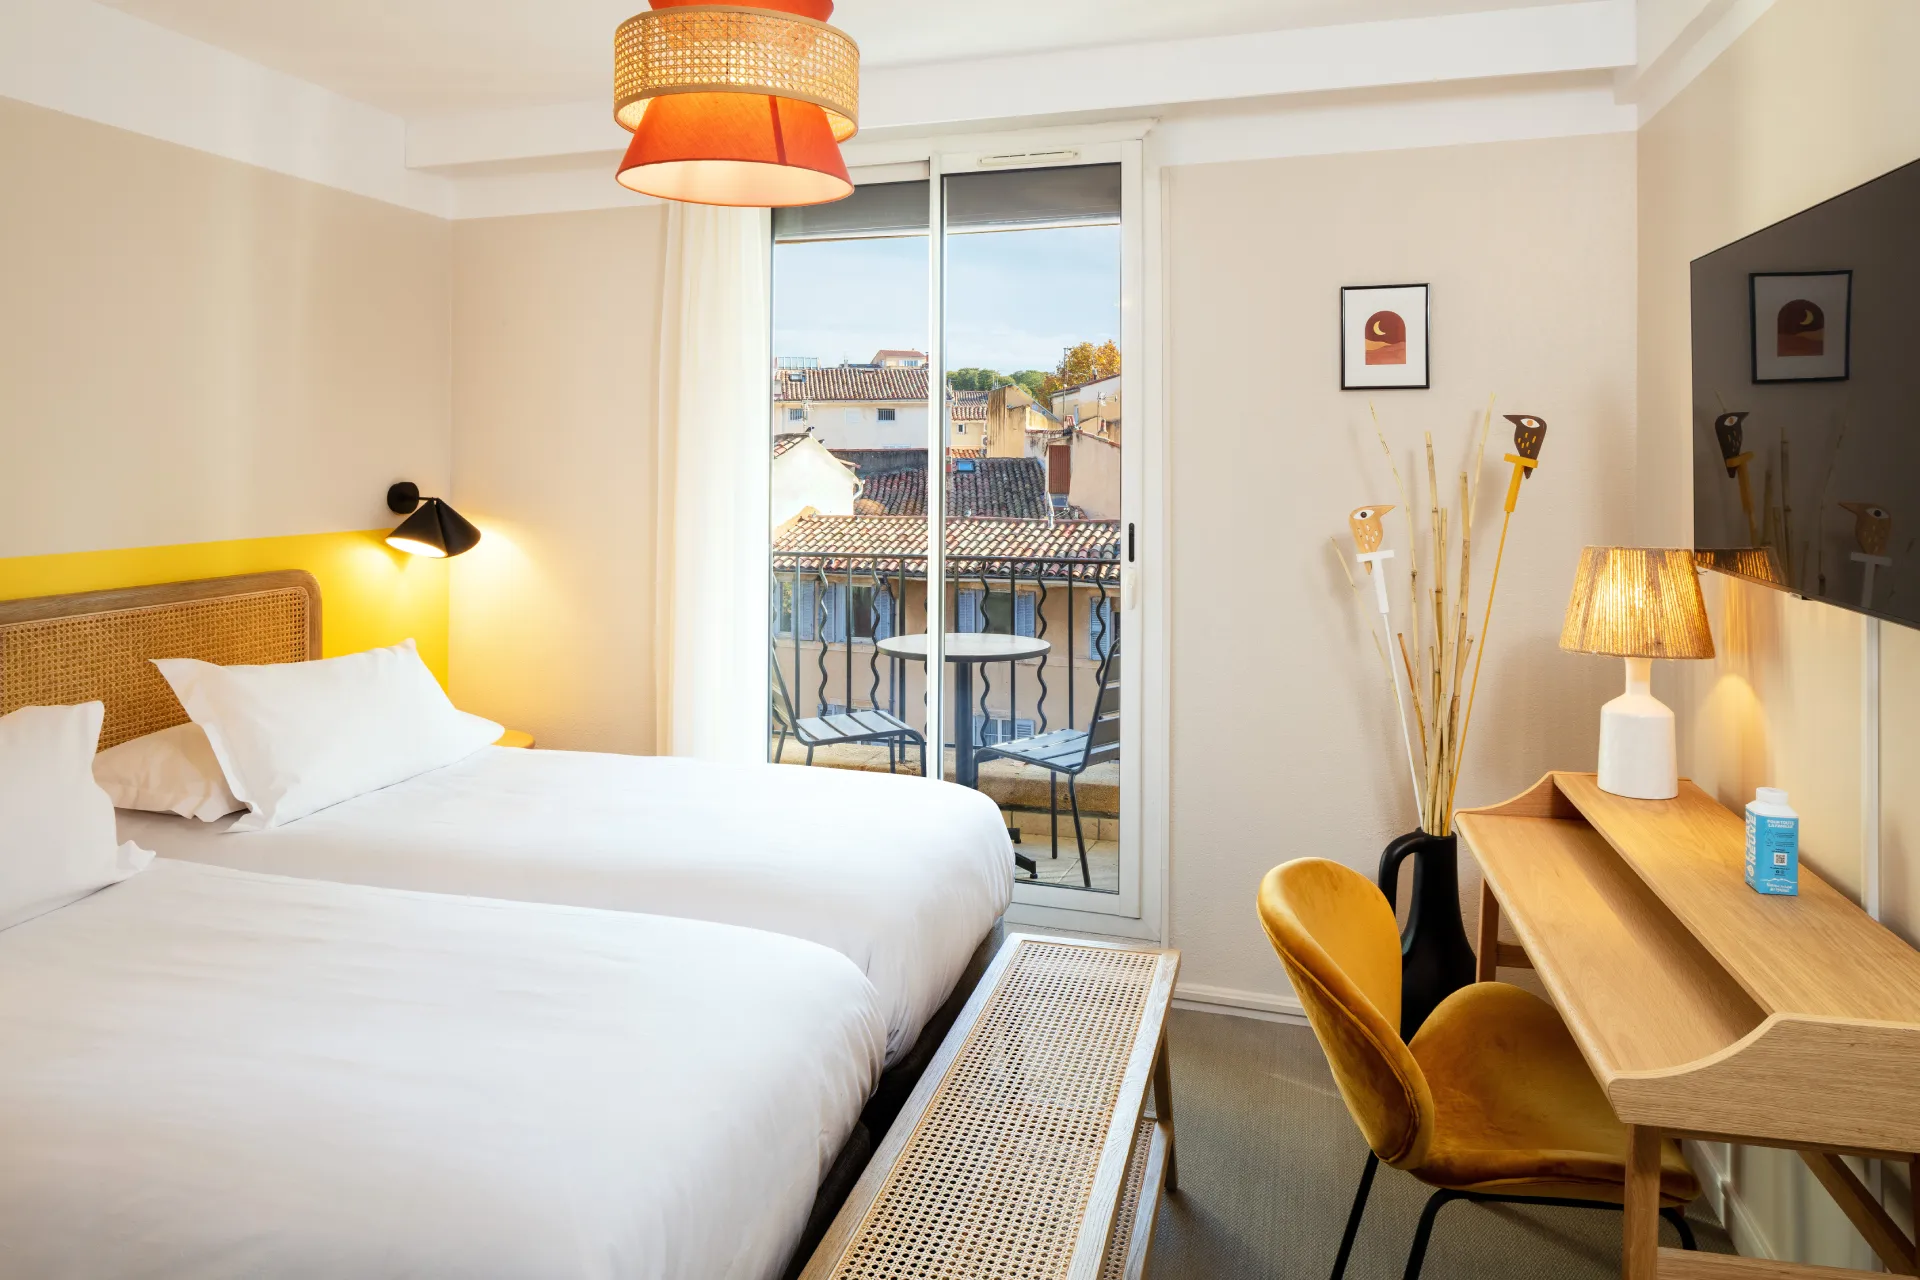 Aix en provence escaletto hotel aix en provence habitación doble superior